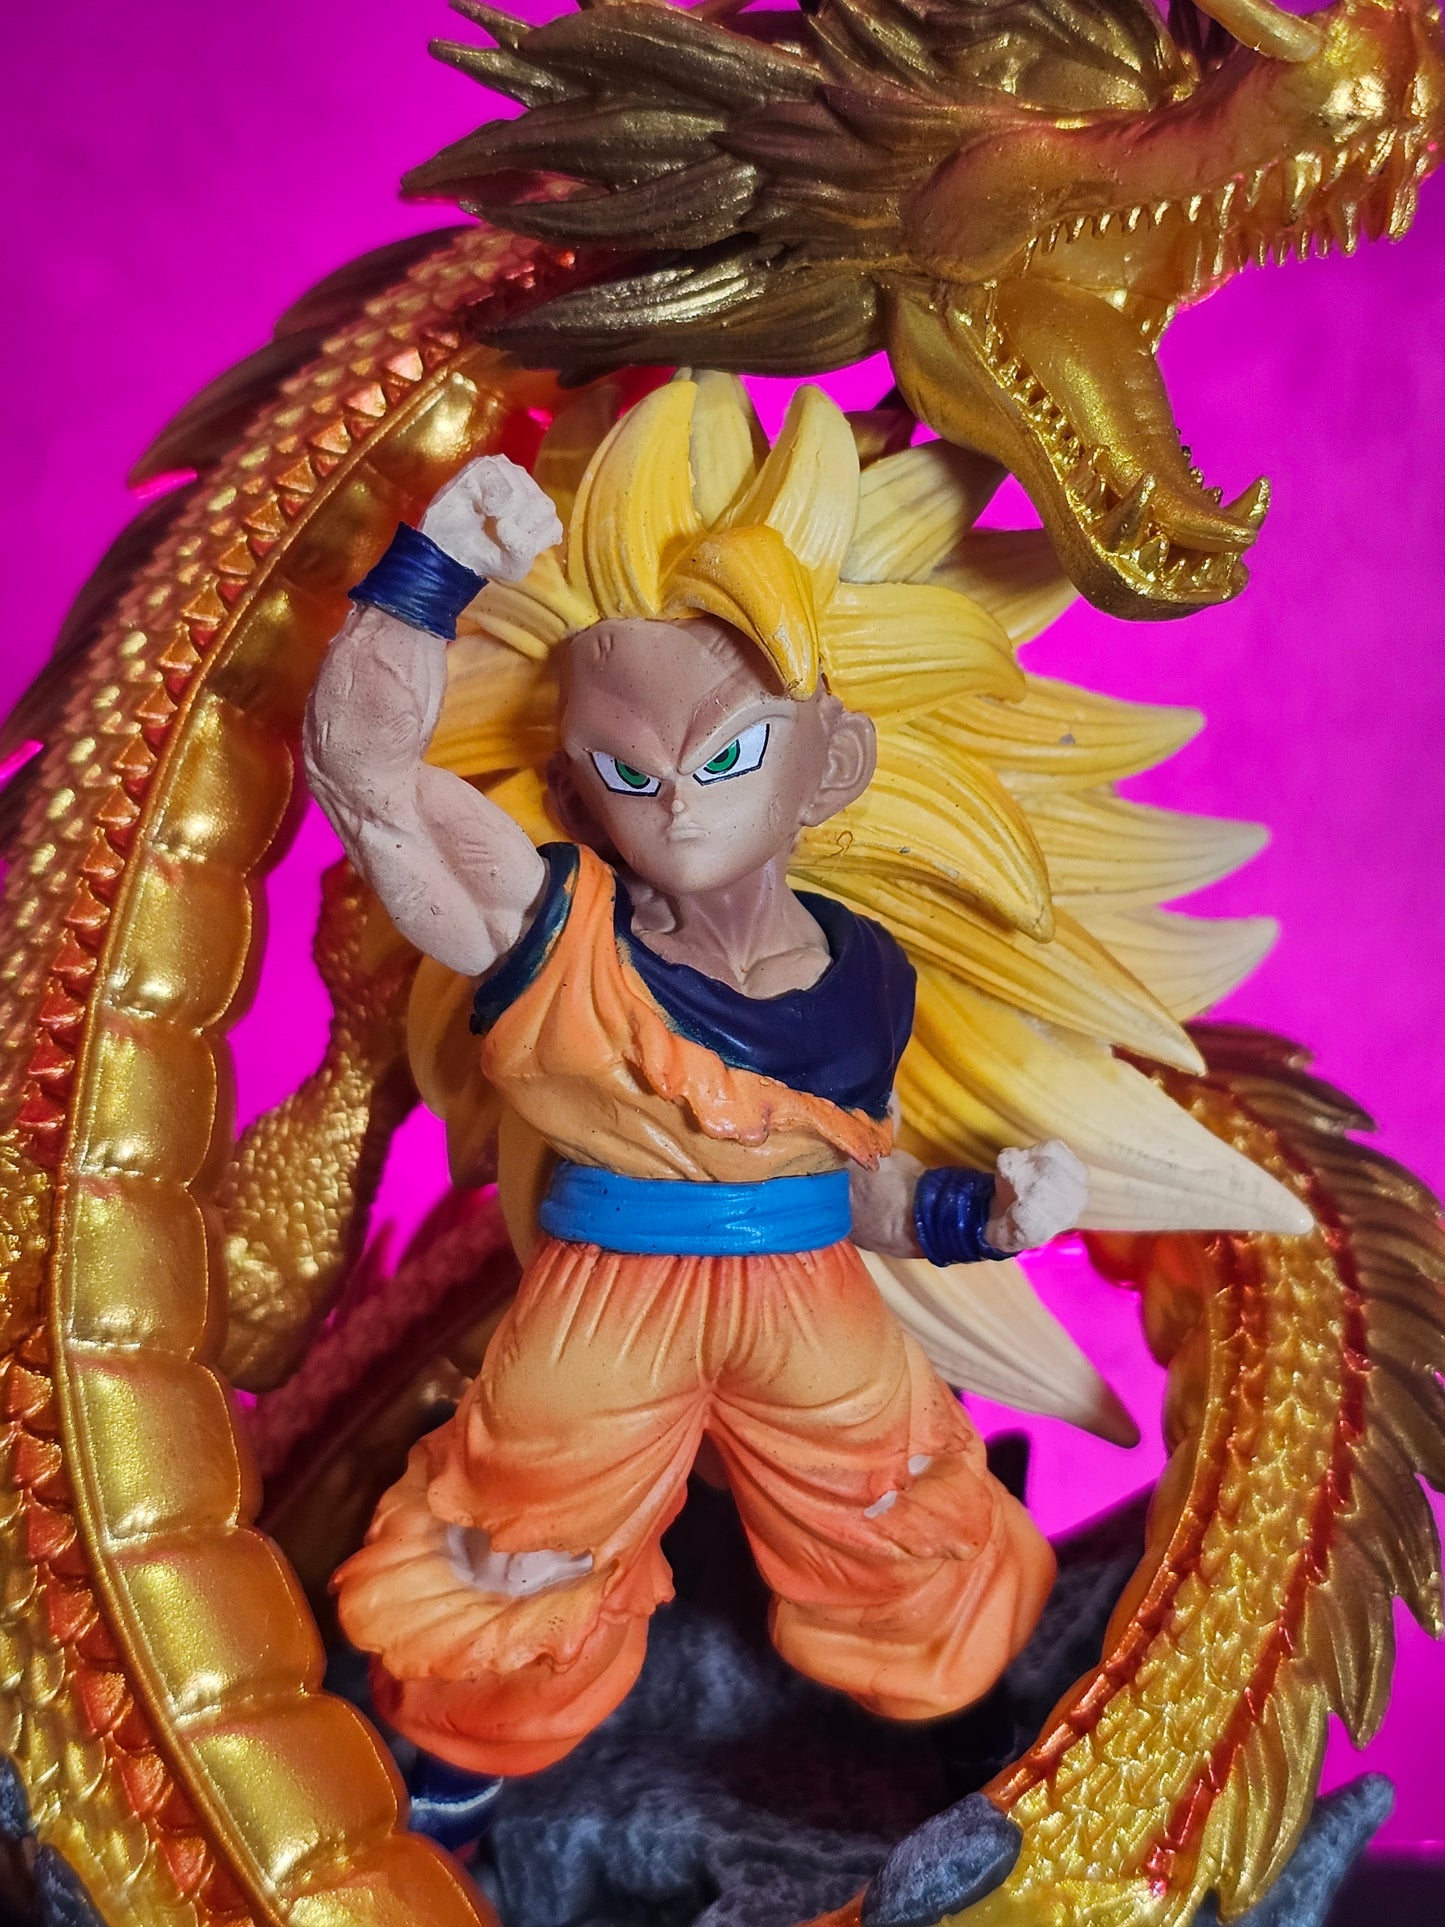 Son Goku with Golden Shenron 15CM.